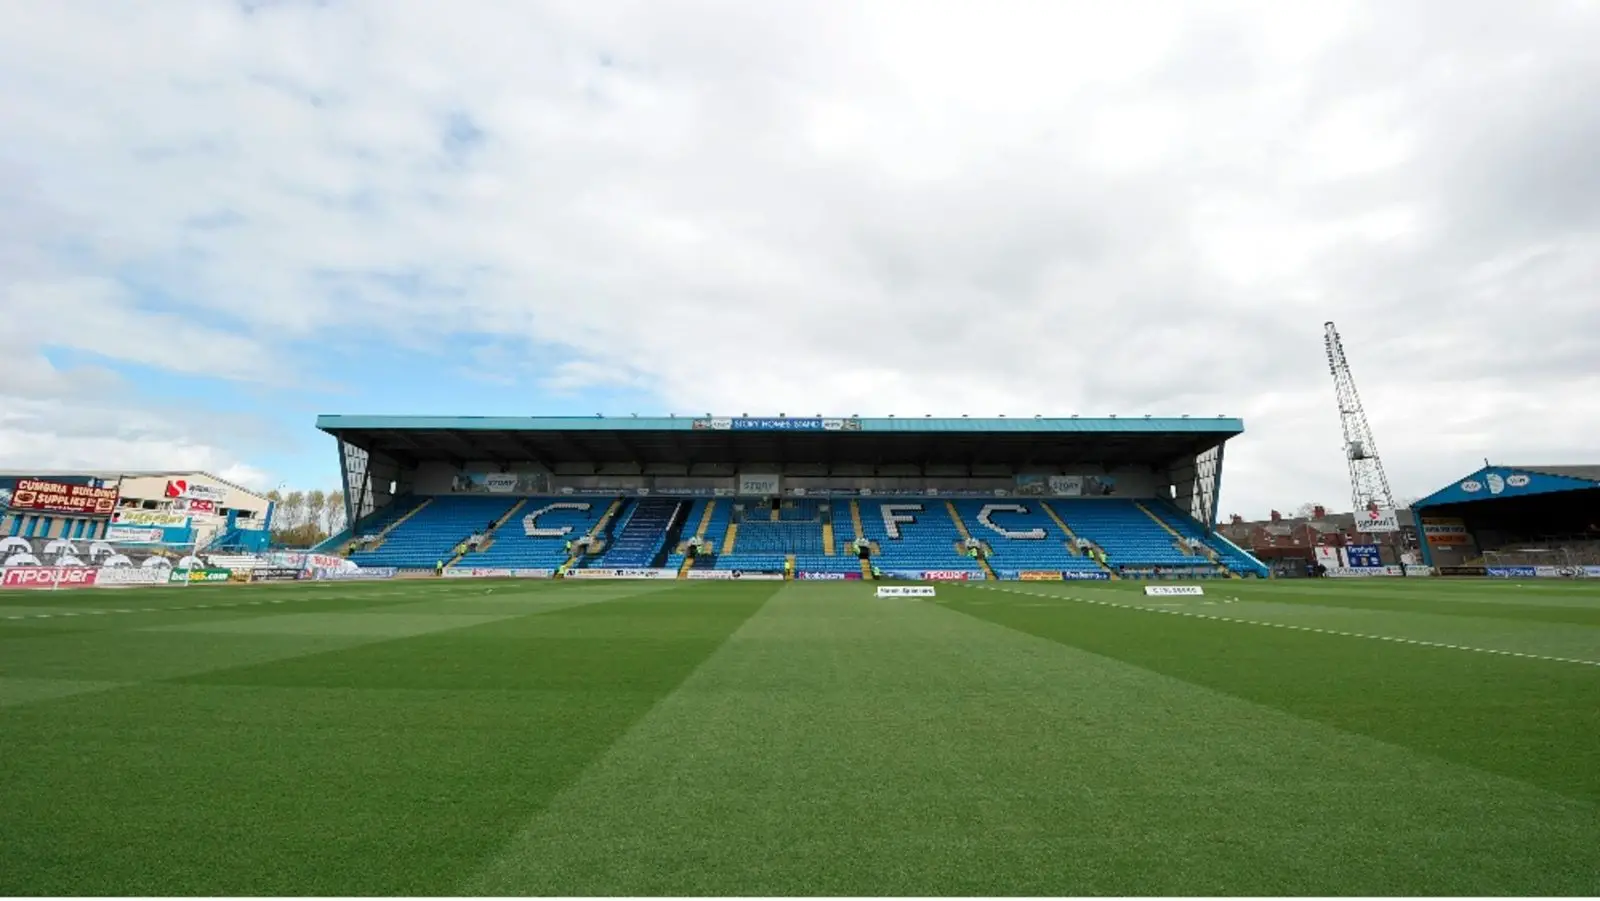 Sân vận động Brunton Park - Ngôi nhà của câu lạc bộ Carlisle United